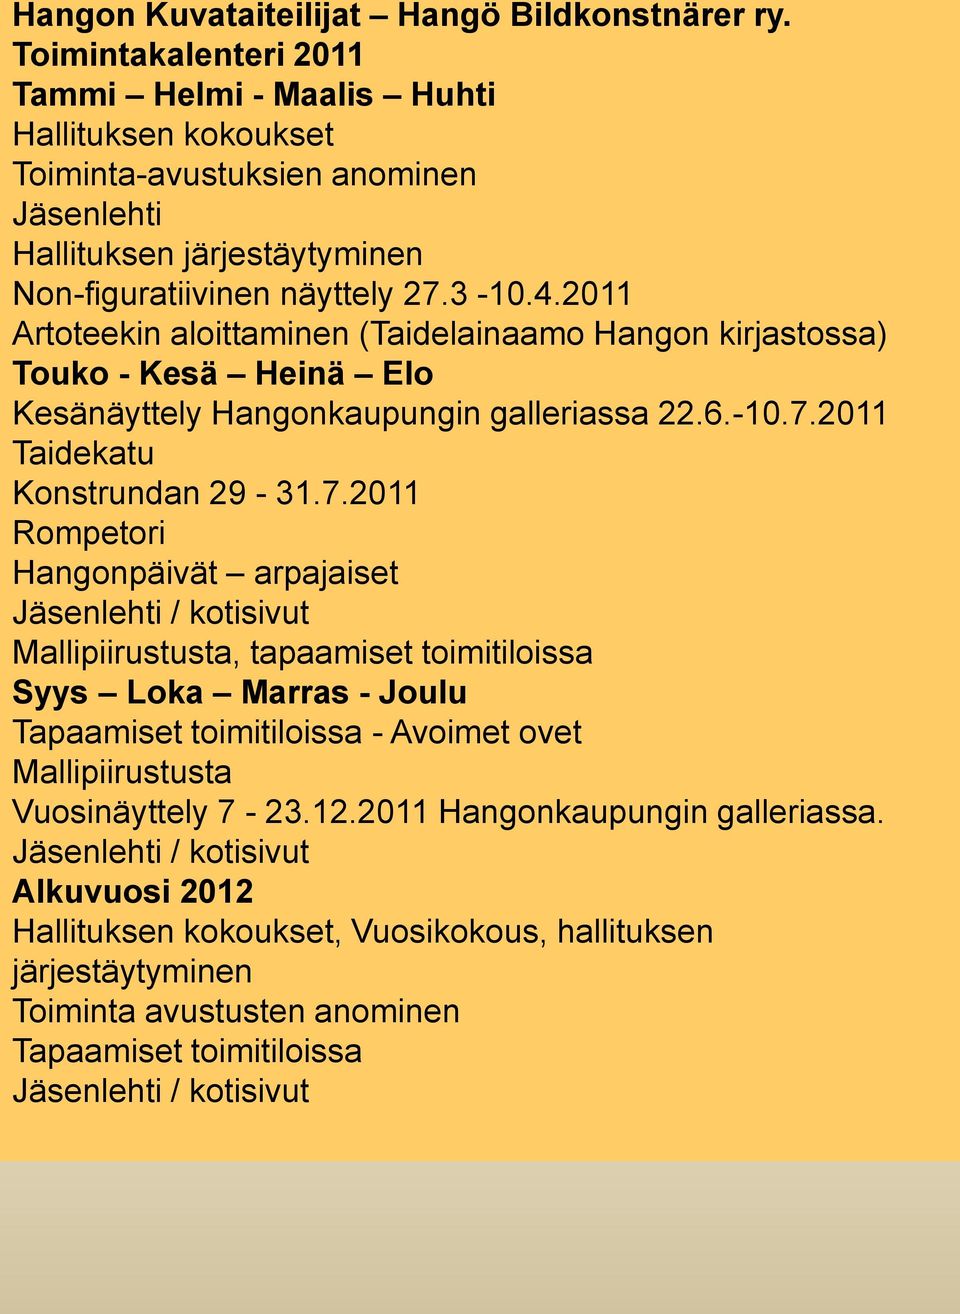 2011 Artoteekin aloittaminen (Taidelainaamo Hangon kirjastossa) Touko - Kesä Heinä Elo Kesänäyttely Hangonkaupungin galleriassa 22.6.-10.7.